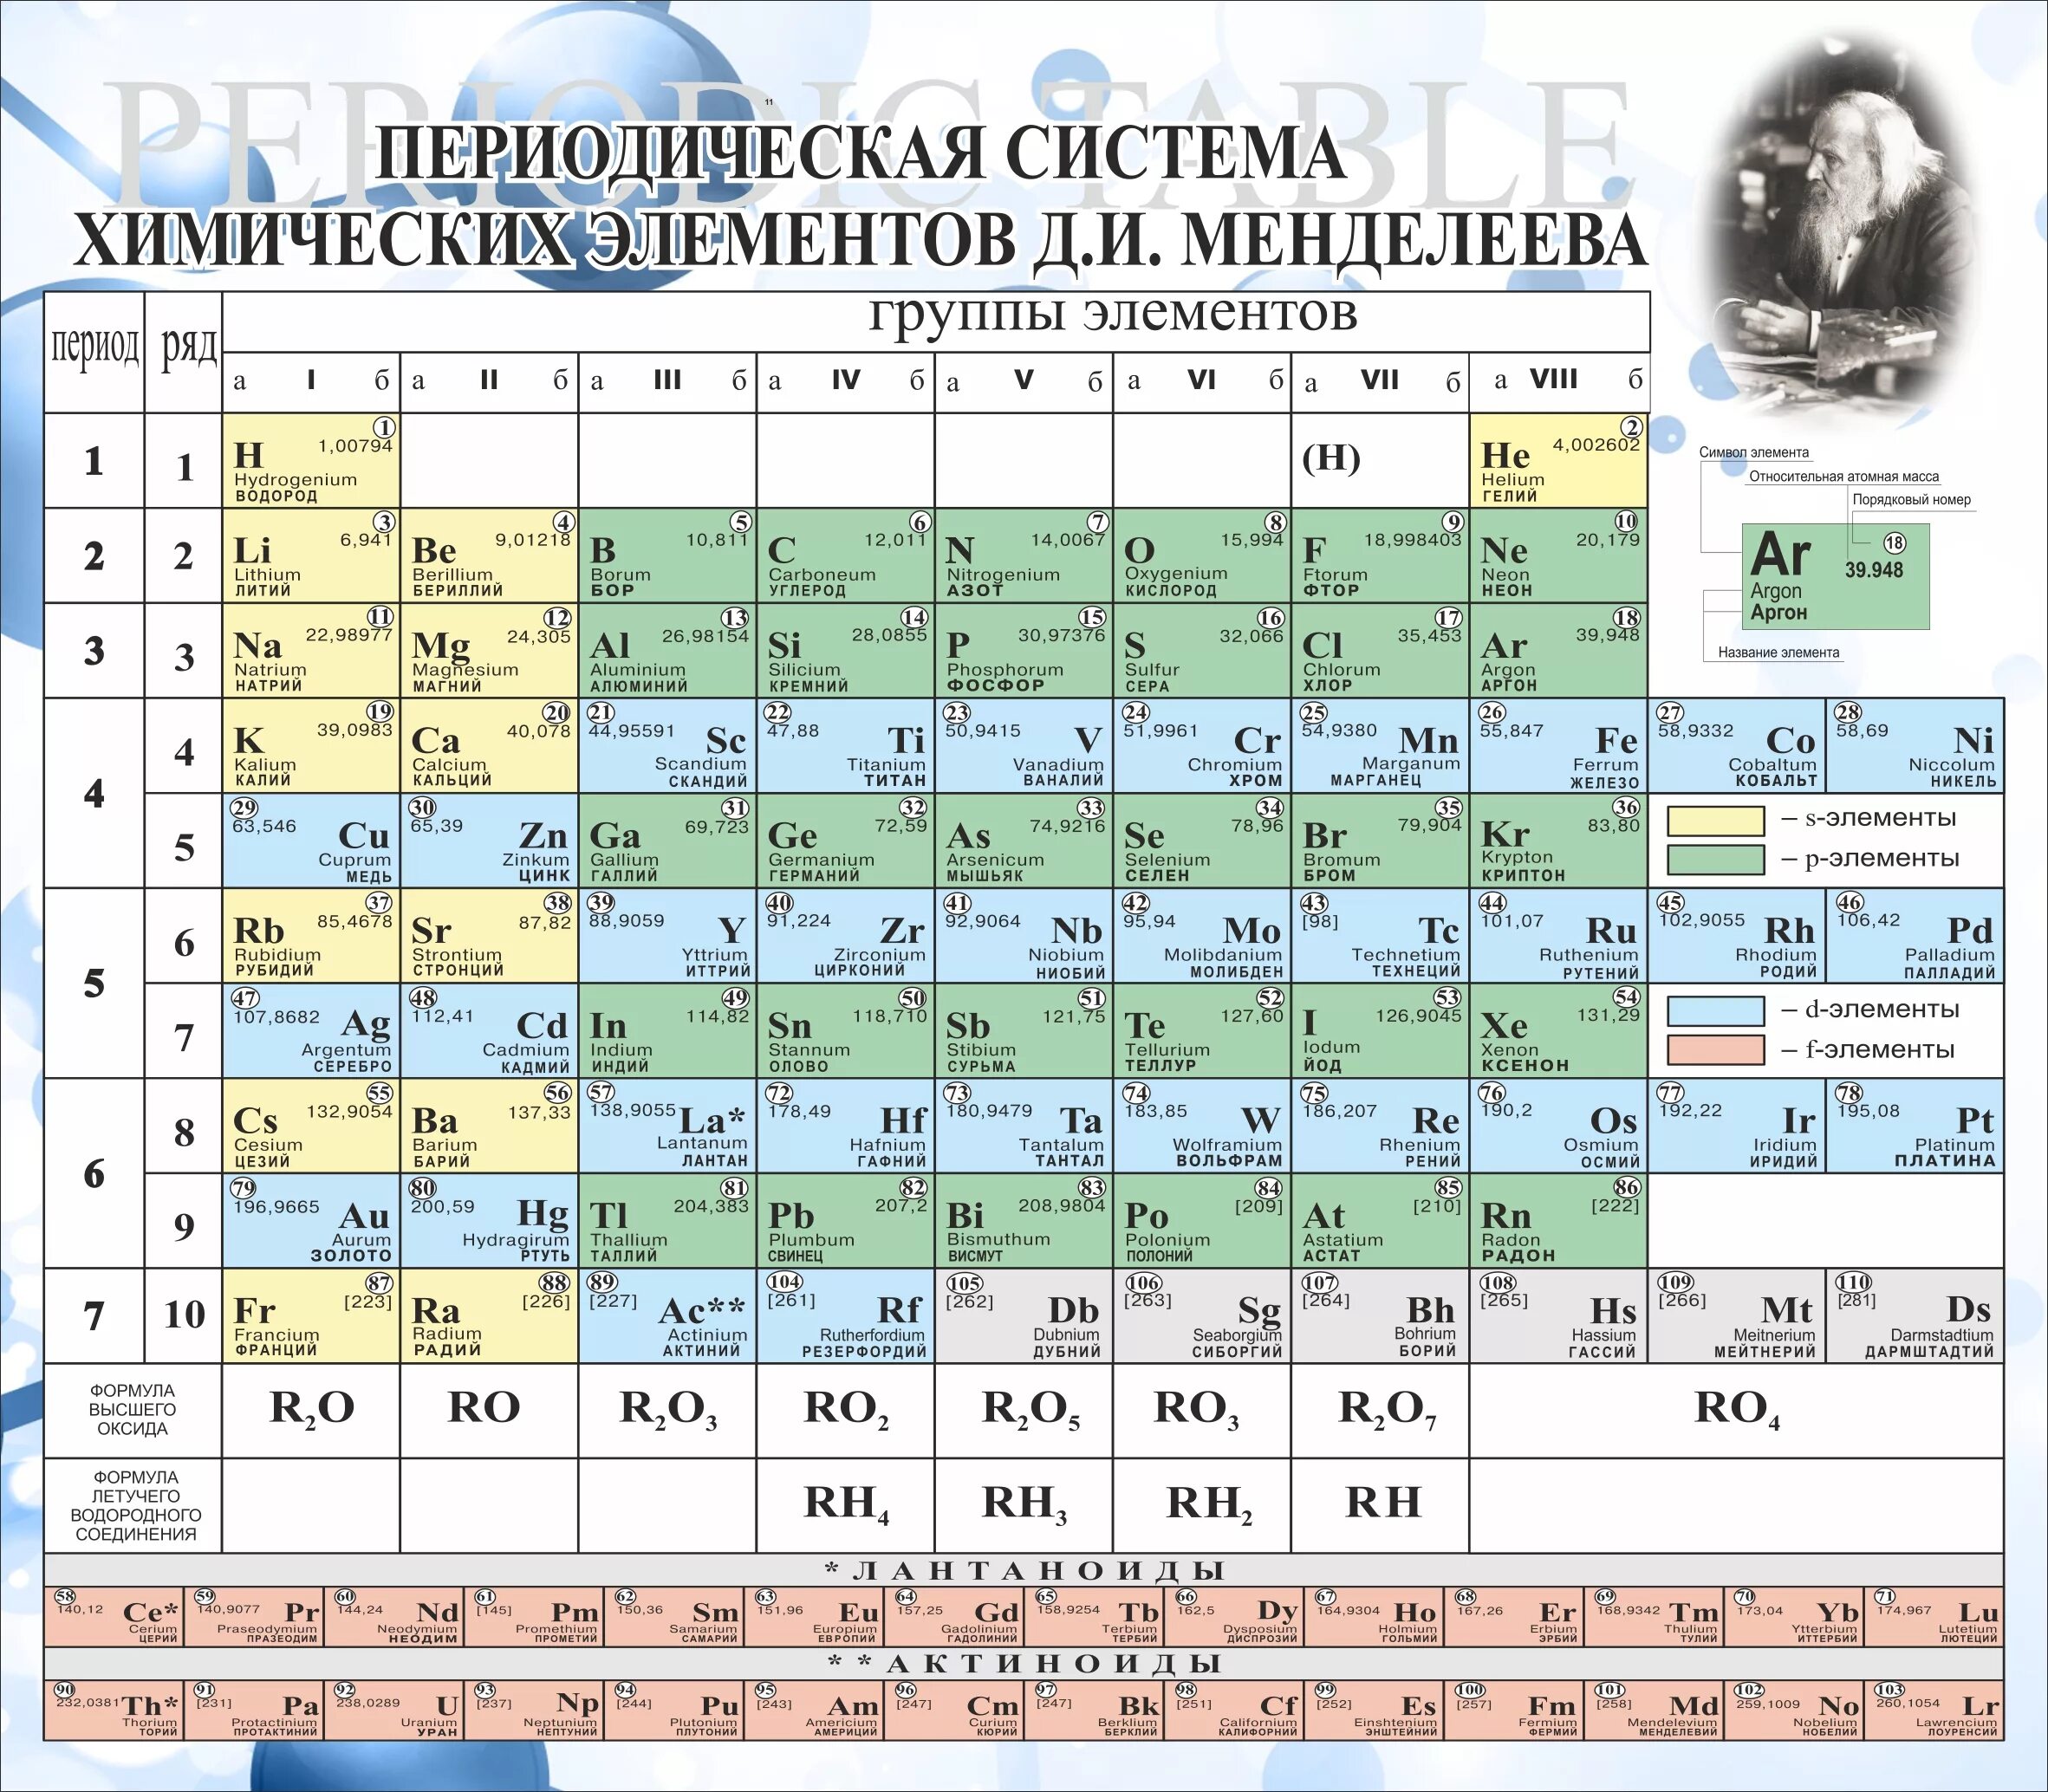 Урок химические элементы 8 класс. Таблица химических элементов с названиями. Произношение хим элементов таблица Менделеева. Периодическая система химических элементов Менделеева 118 элементов. Латинские названия химических элементов таблицы Менделеева.